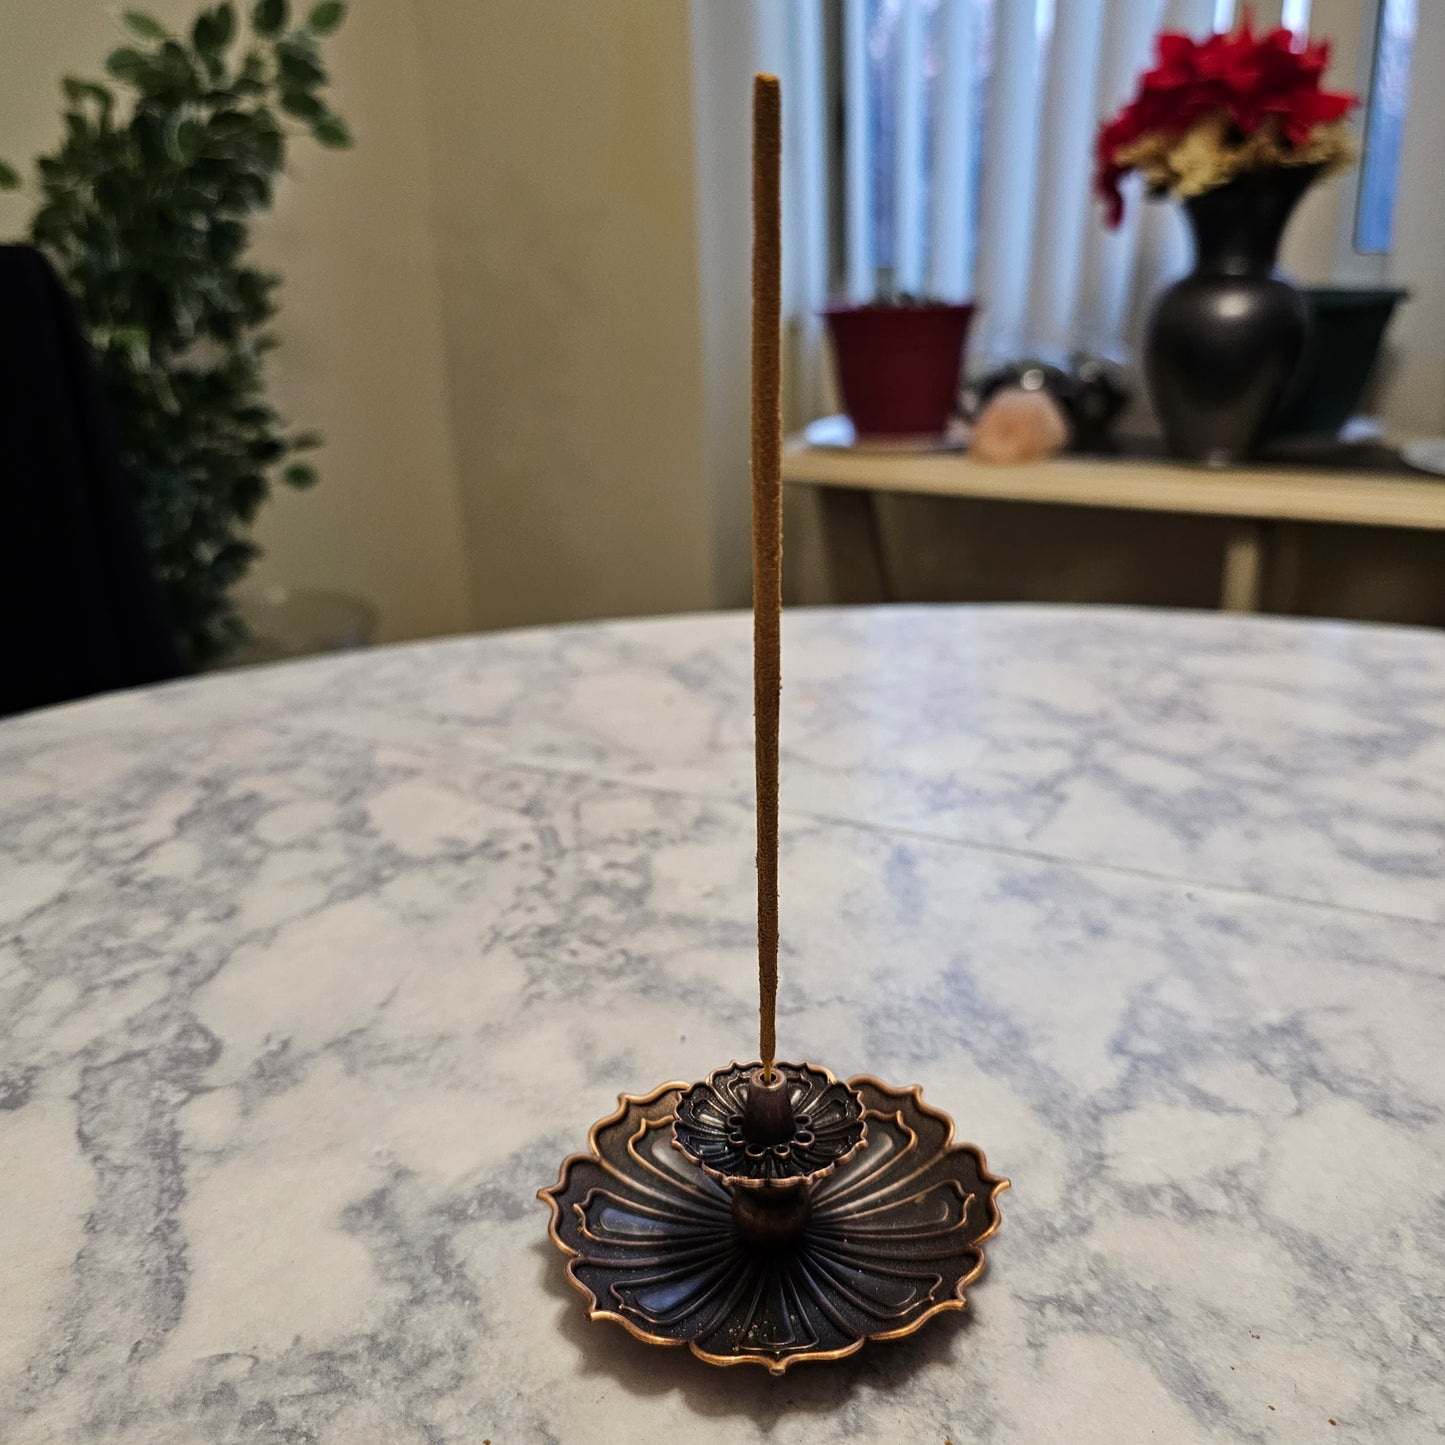 Incense holder